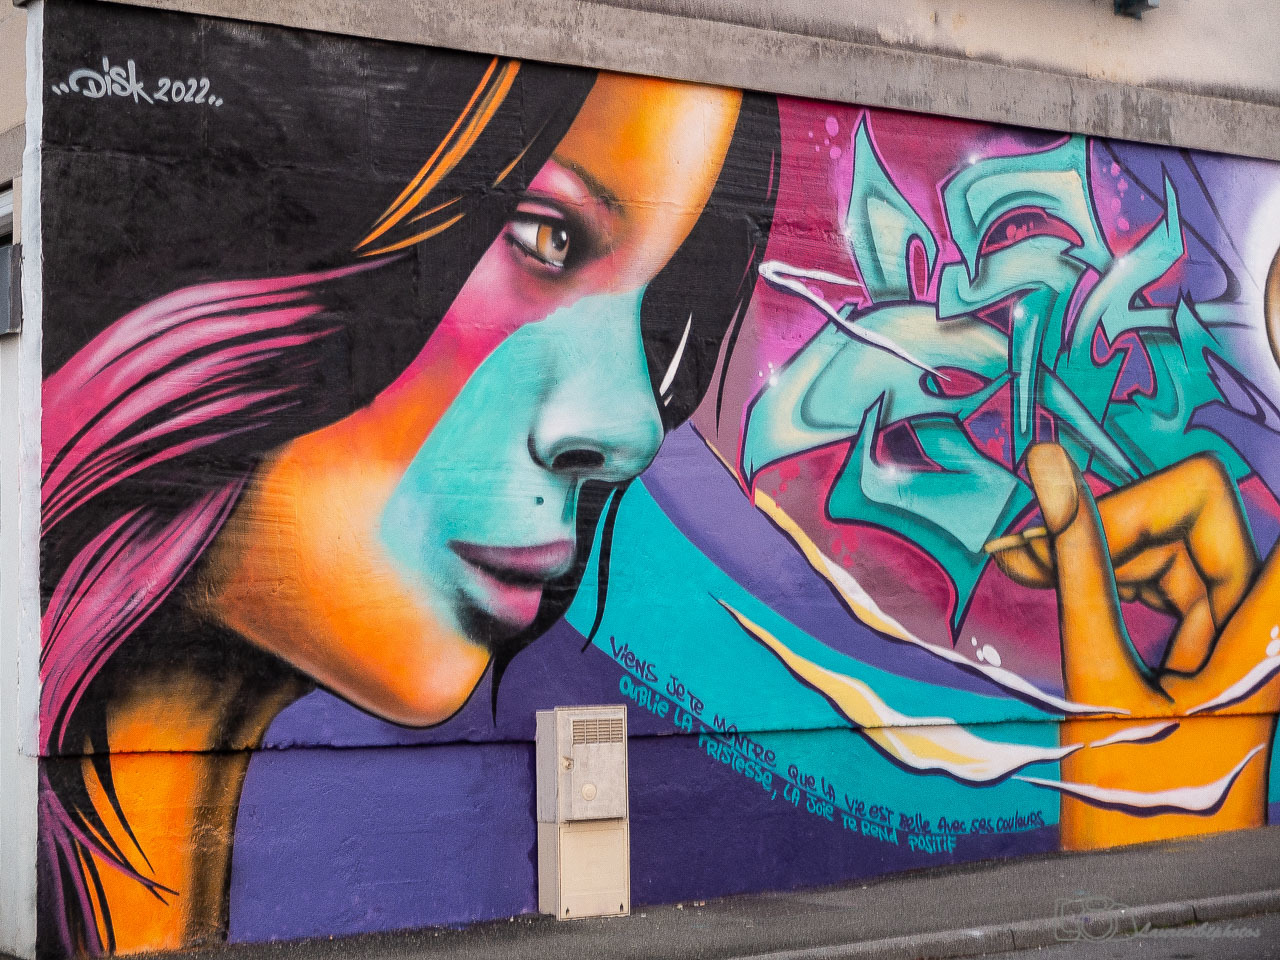 Graffiti 6230 "Open fresque" capturé par laurentbtphotos à Bourges France